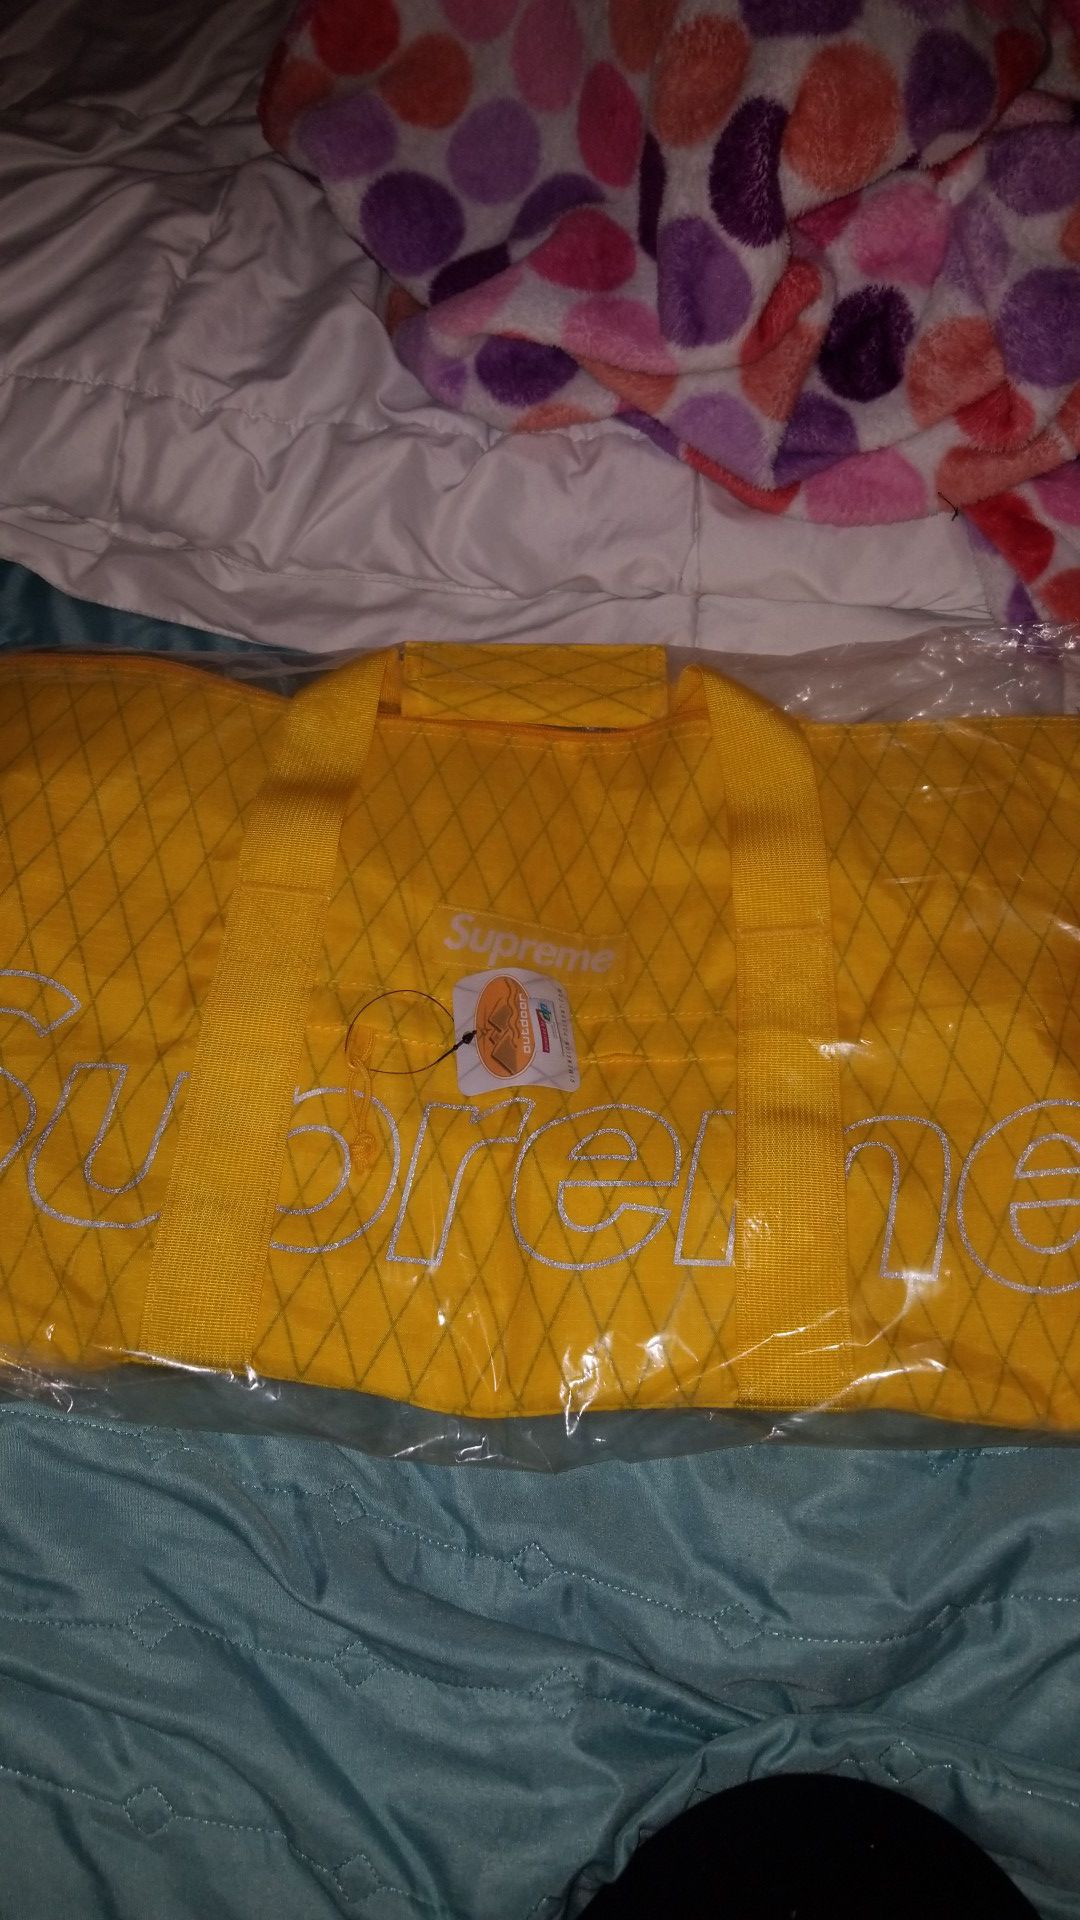 Yellow supreme duffle bag